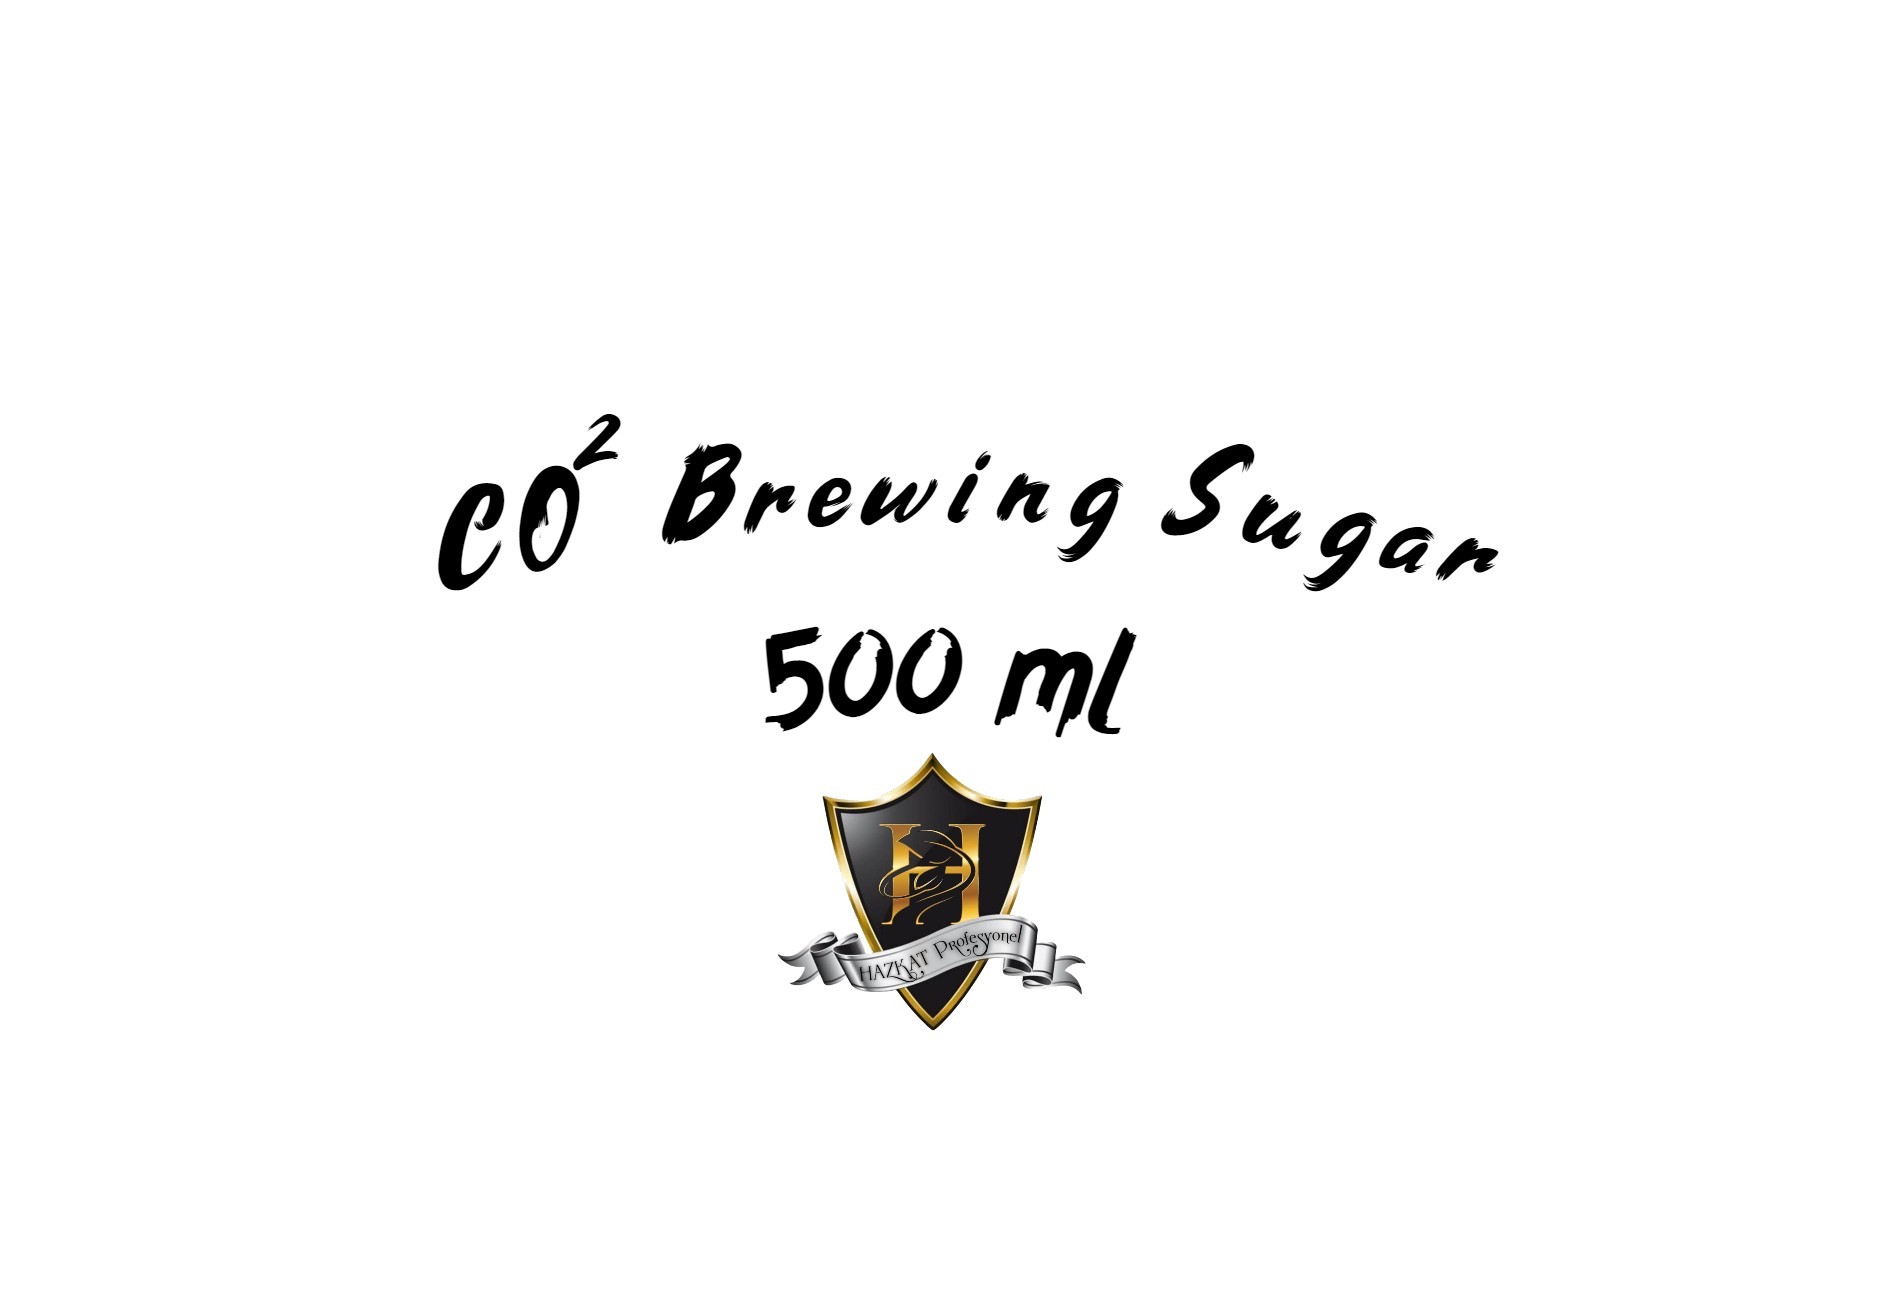 Co2 Brewing Sugar Gazlama Şekeri 500ml Başarılı Sepete Eklendi